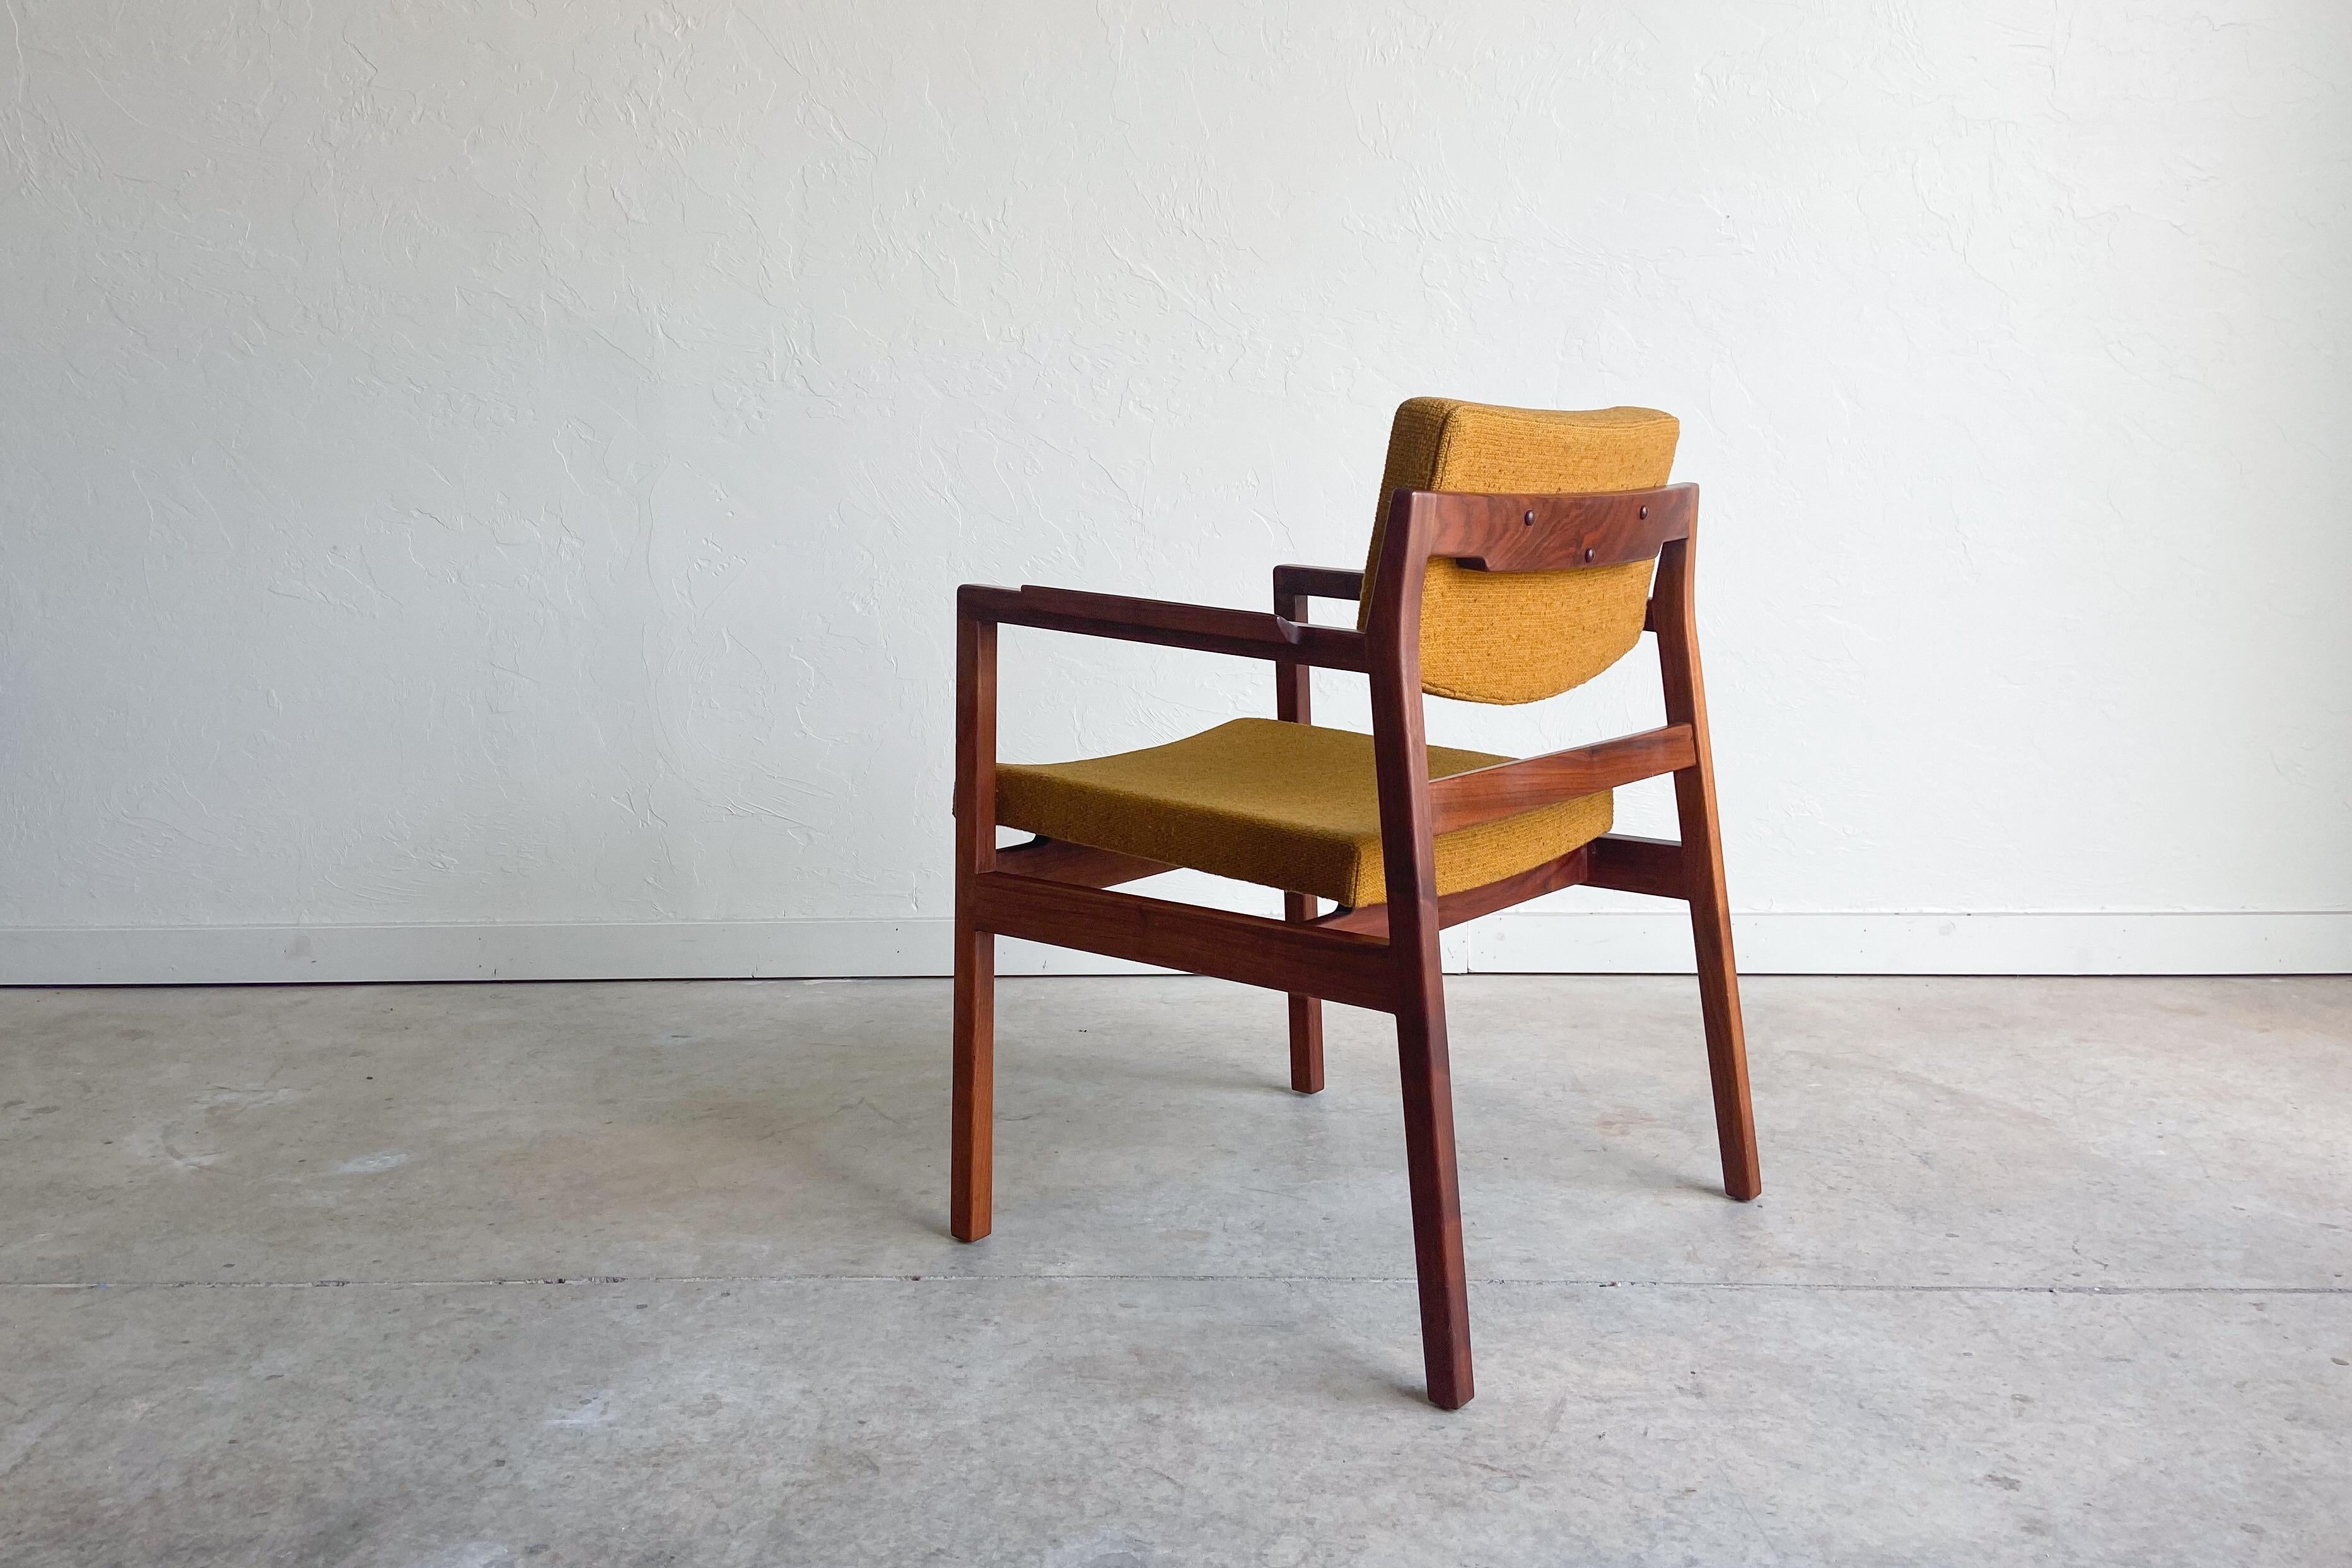 Ein Sessel aus massivem Nussbaumholz, entworfen von Jens Risom. 

Architektonisches Design mit klaren Linien und geformten Armlehnen. Er eignet sich gut als Schreibtischstuhl oder Beistellstuhl. 

Angeboten in ausgezeichnetem Originalzustand.